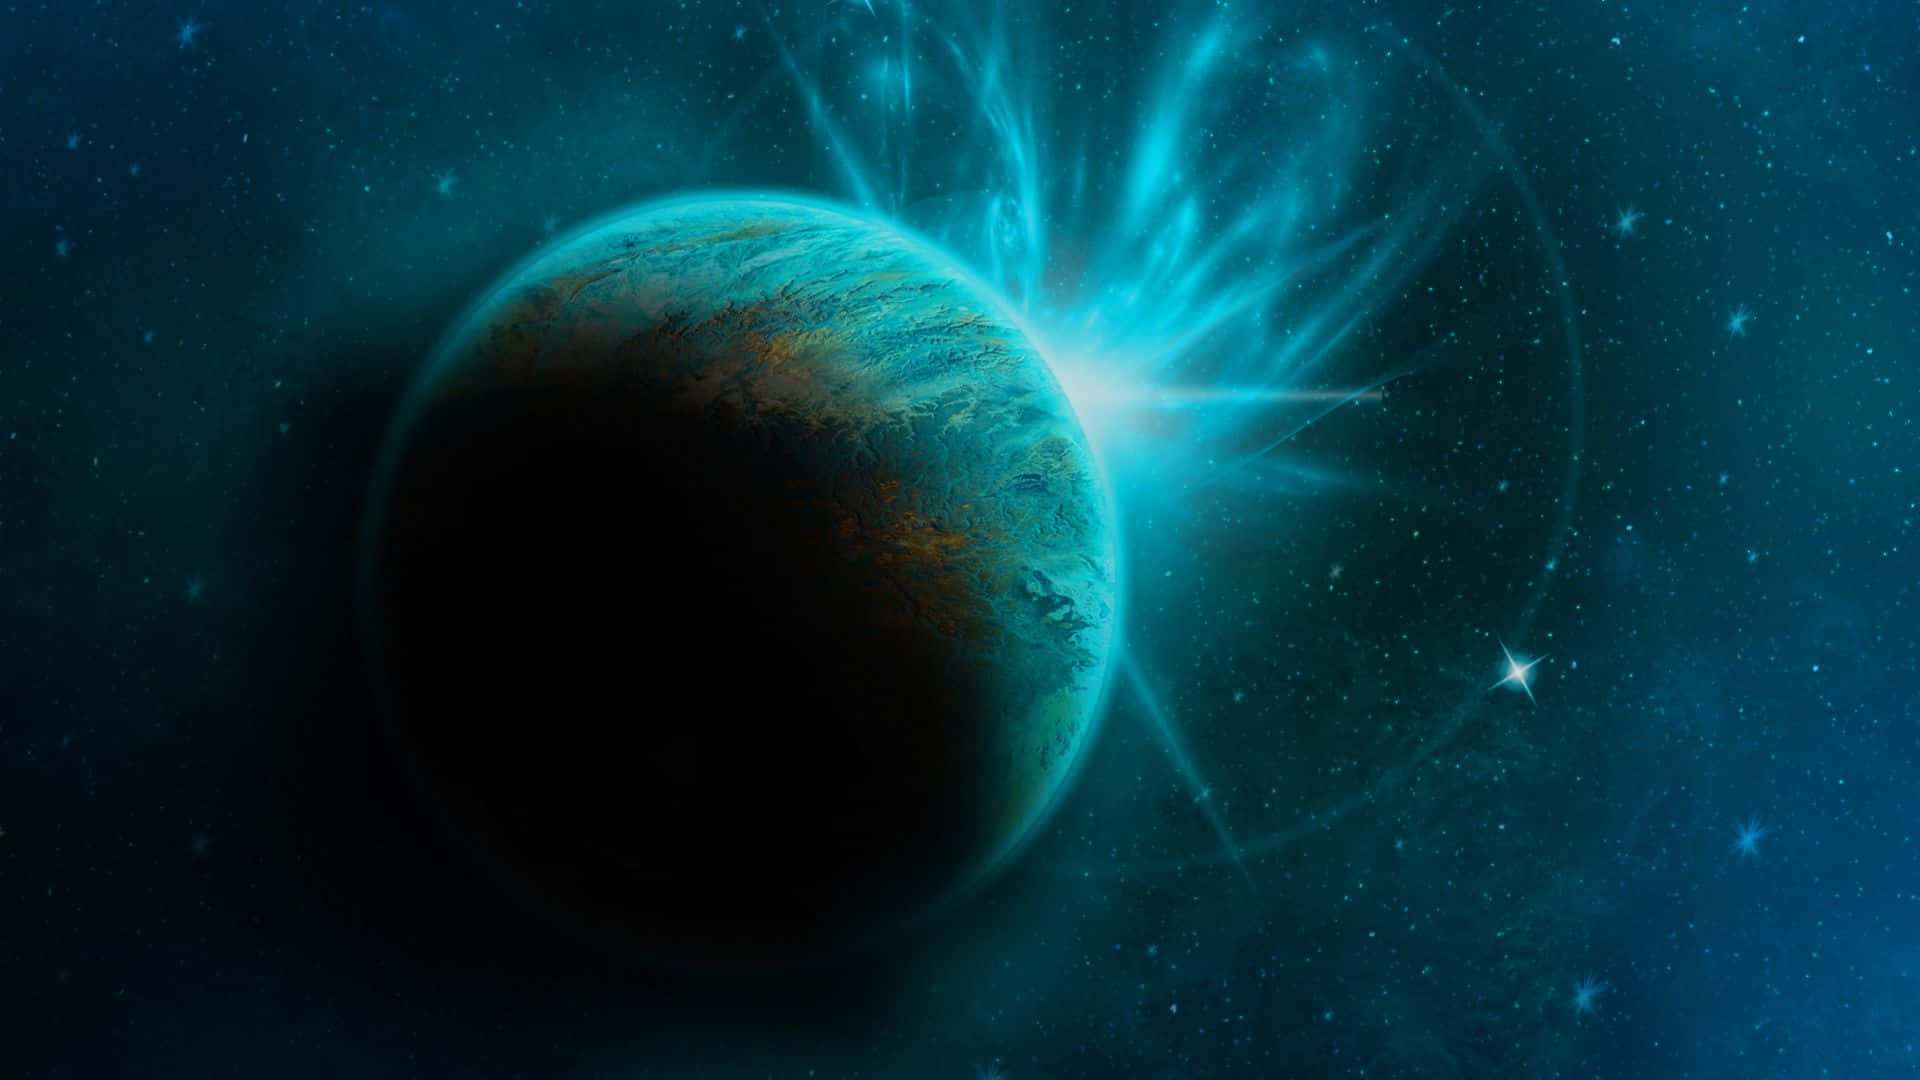 Entdeckensie Die Geheimnisse Des Sonnensystems Mit Einem Atemberaubenden Blick Auf Die Planeten Im Weltraum.